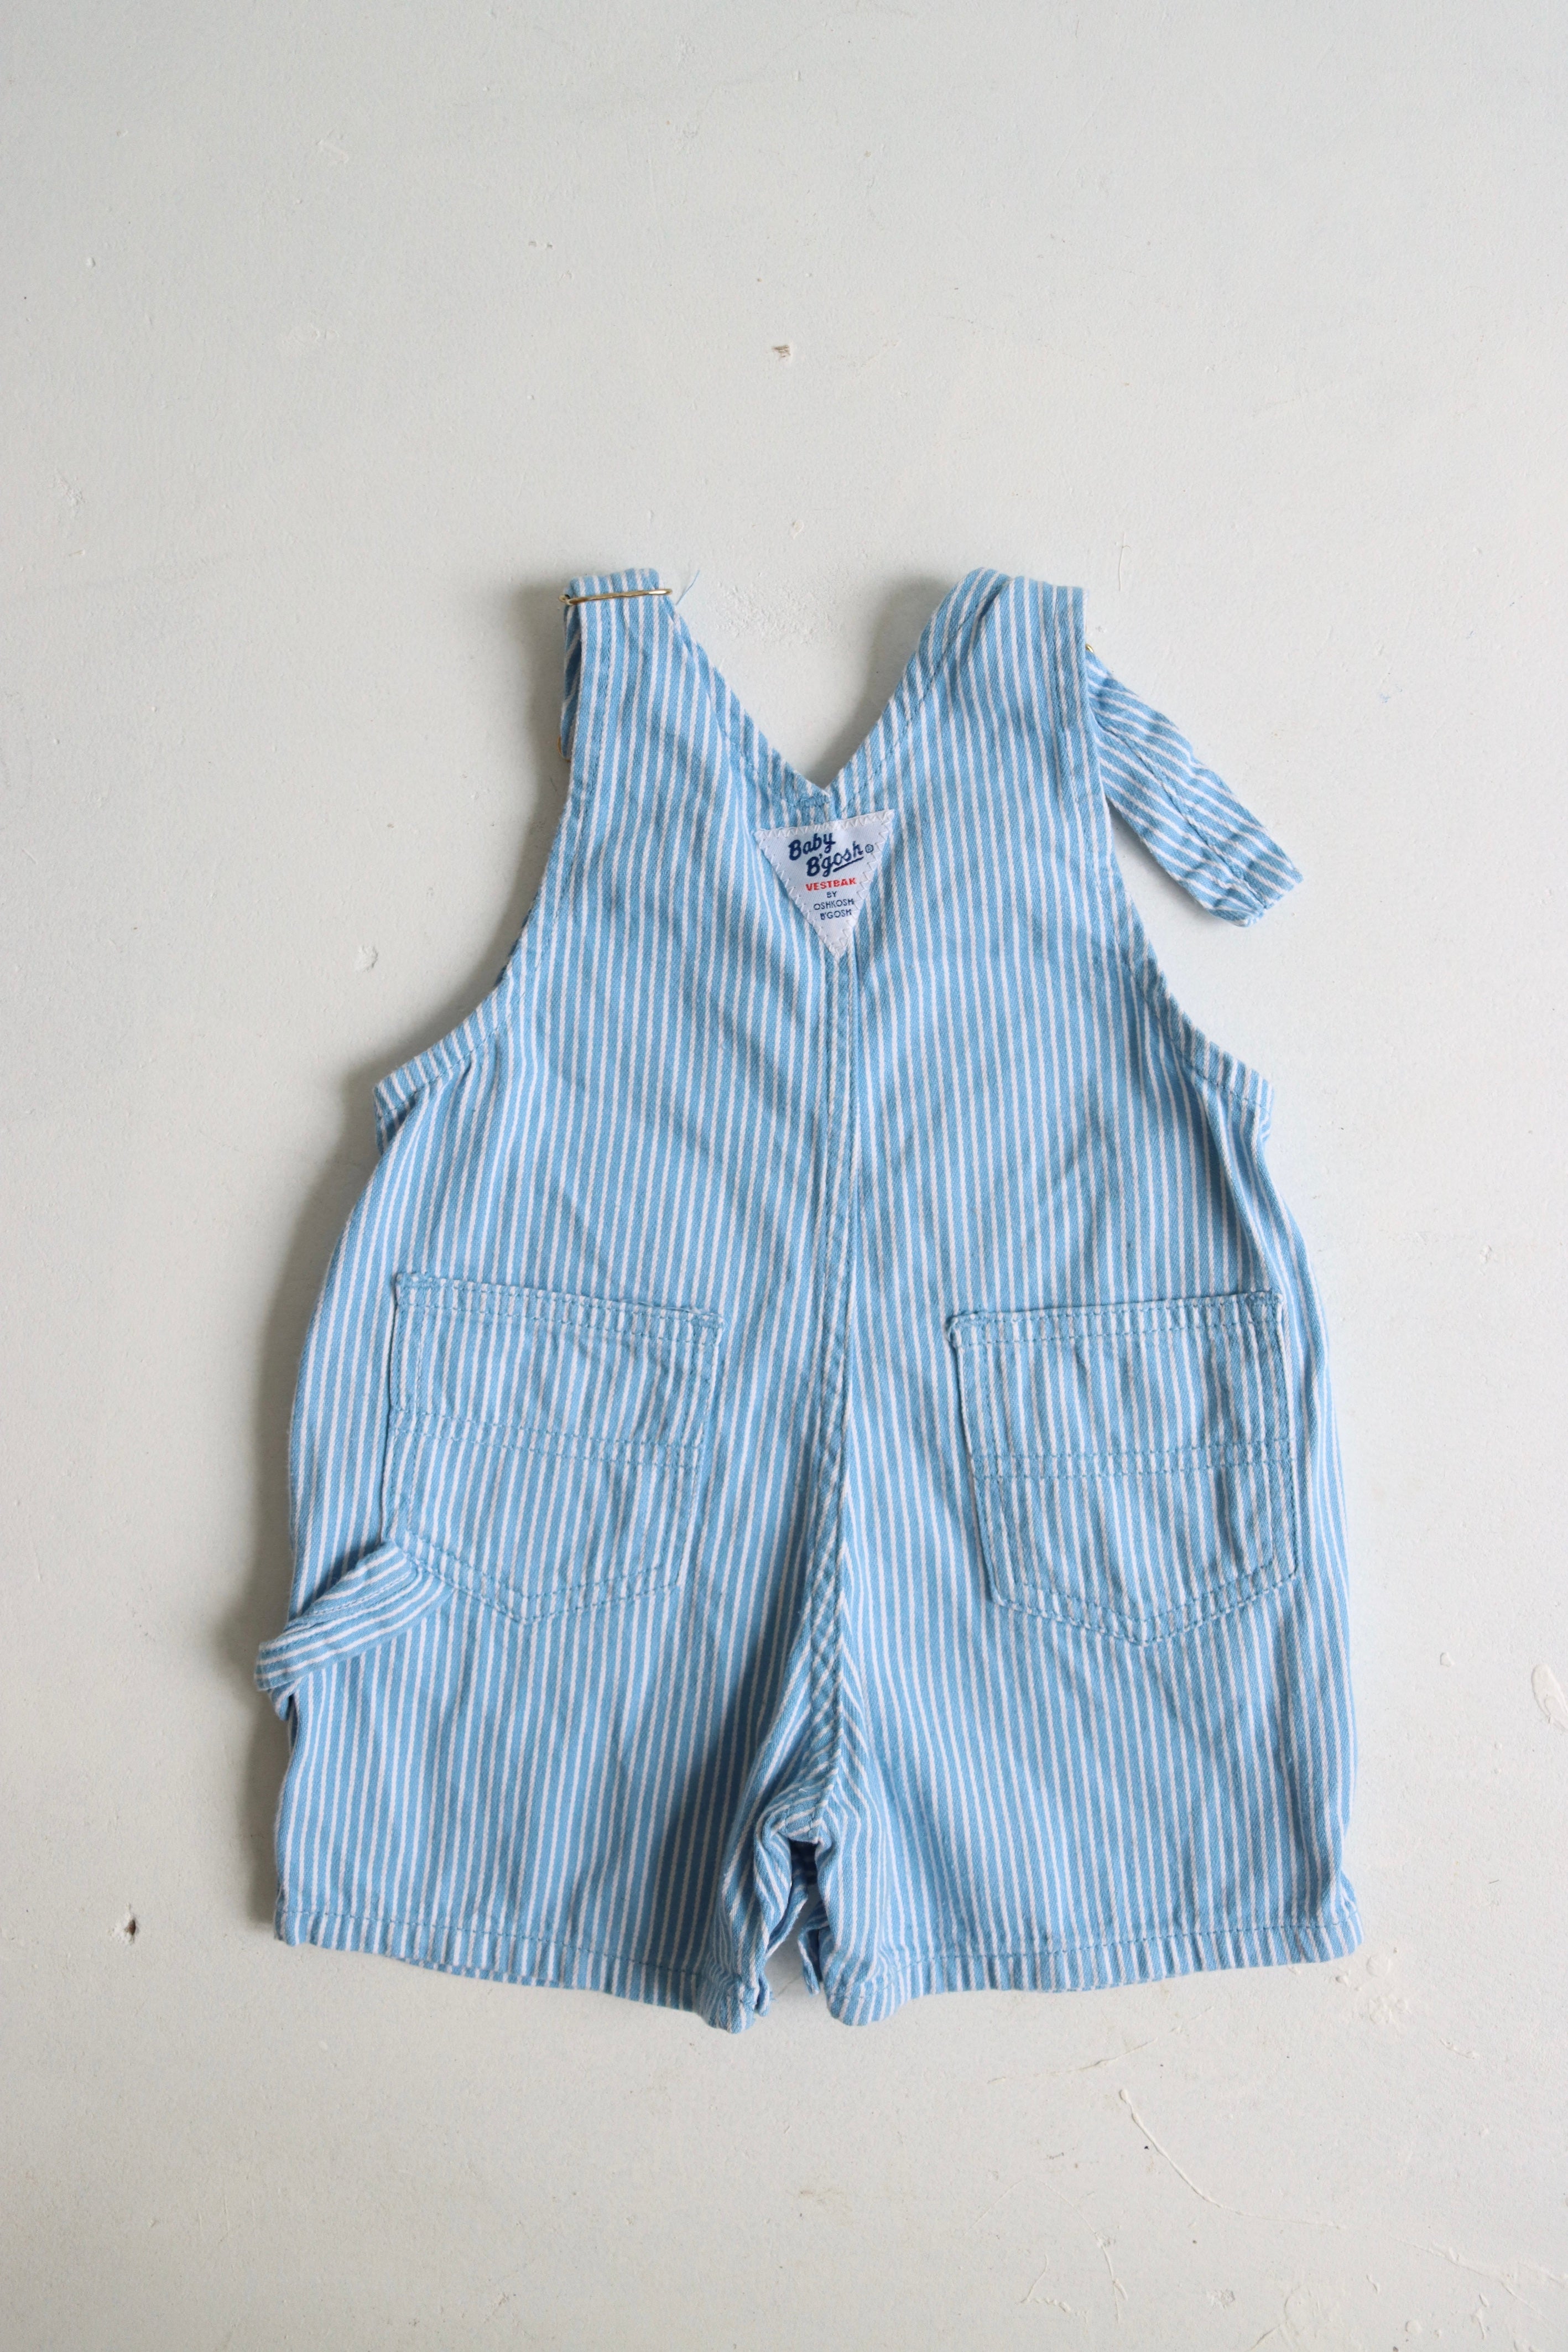 Vintage baby blue OshKosh shortalls - size 6-12 months